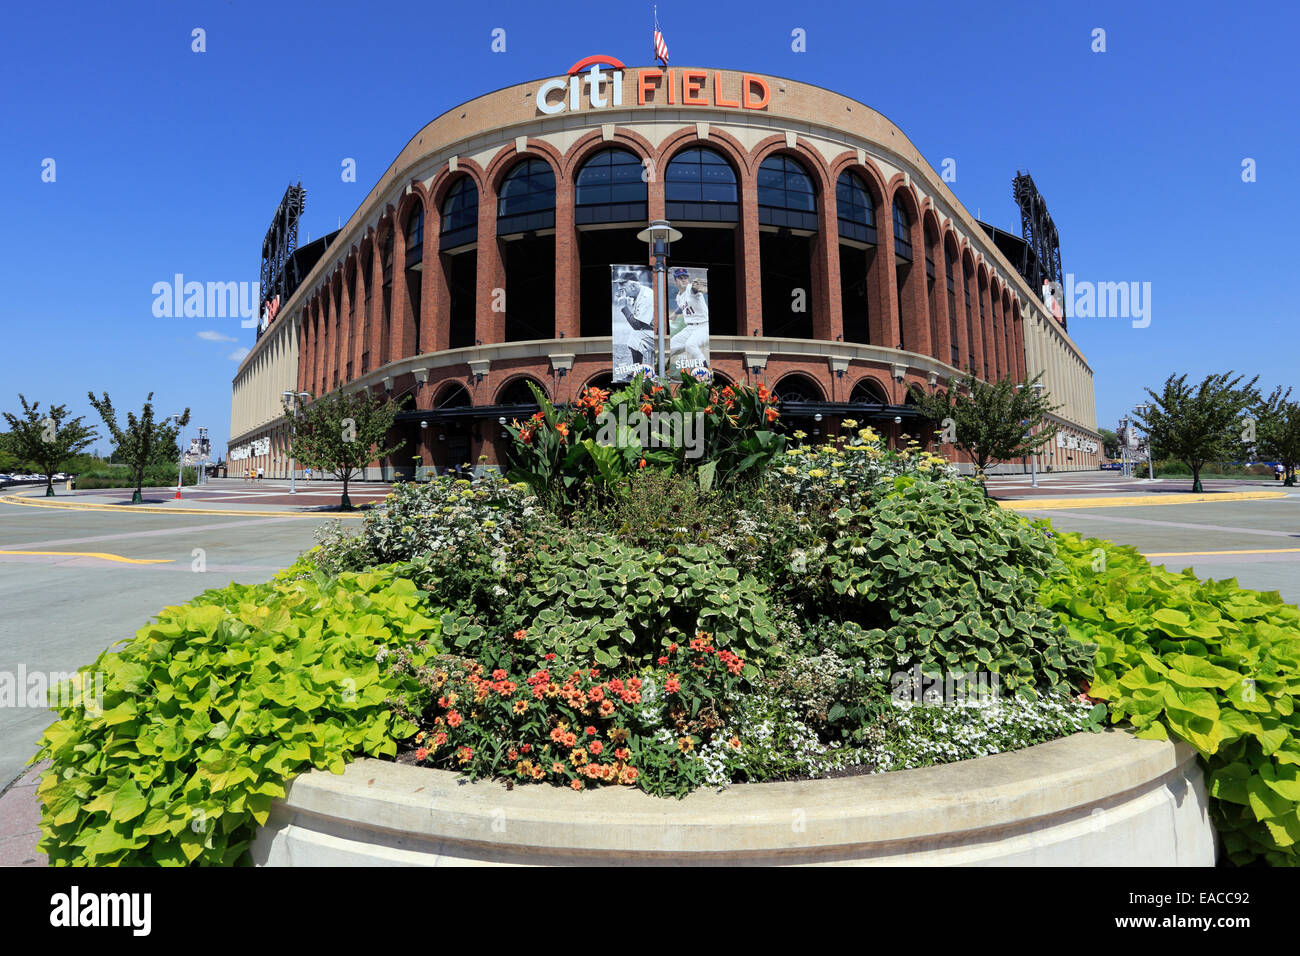 Citi Field Stadium hogar del equipo de béisbol de los Mets de Nueva York Foto de stock